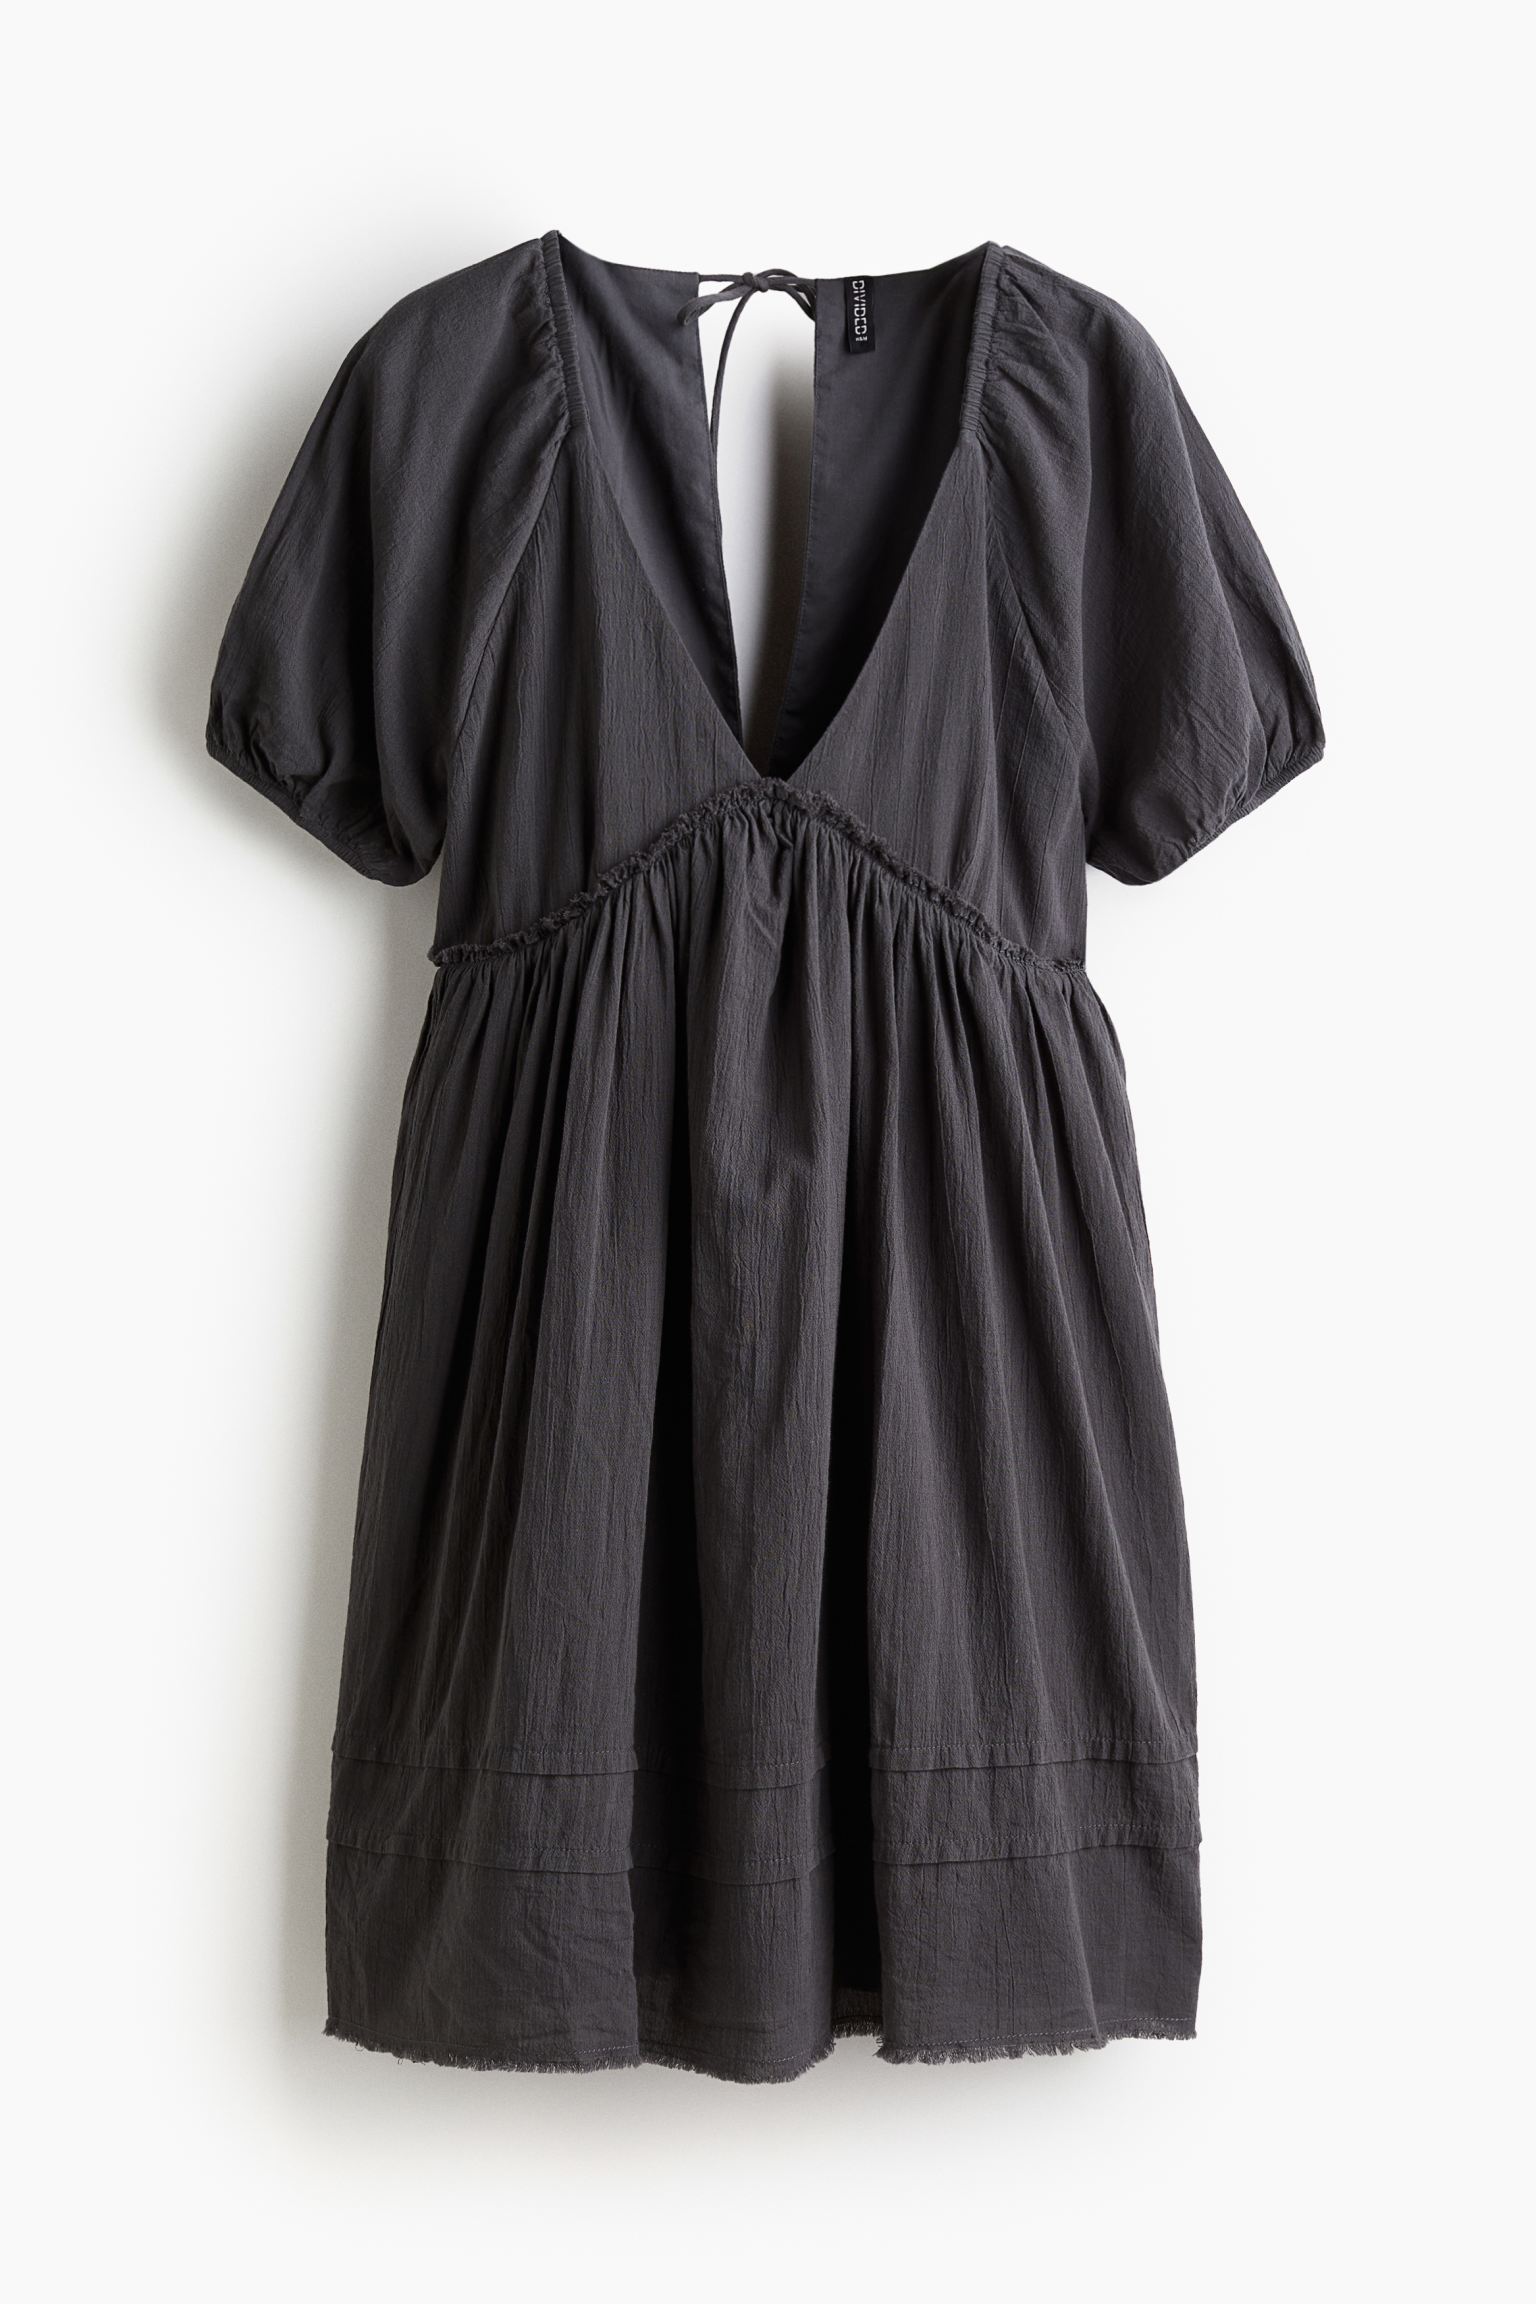 Платье H&M Tie-detail Crinkled Easy-wear, темно-серый платье короткое v образный вырез короткие рукава 40 черный